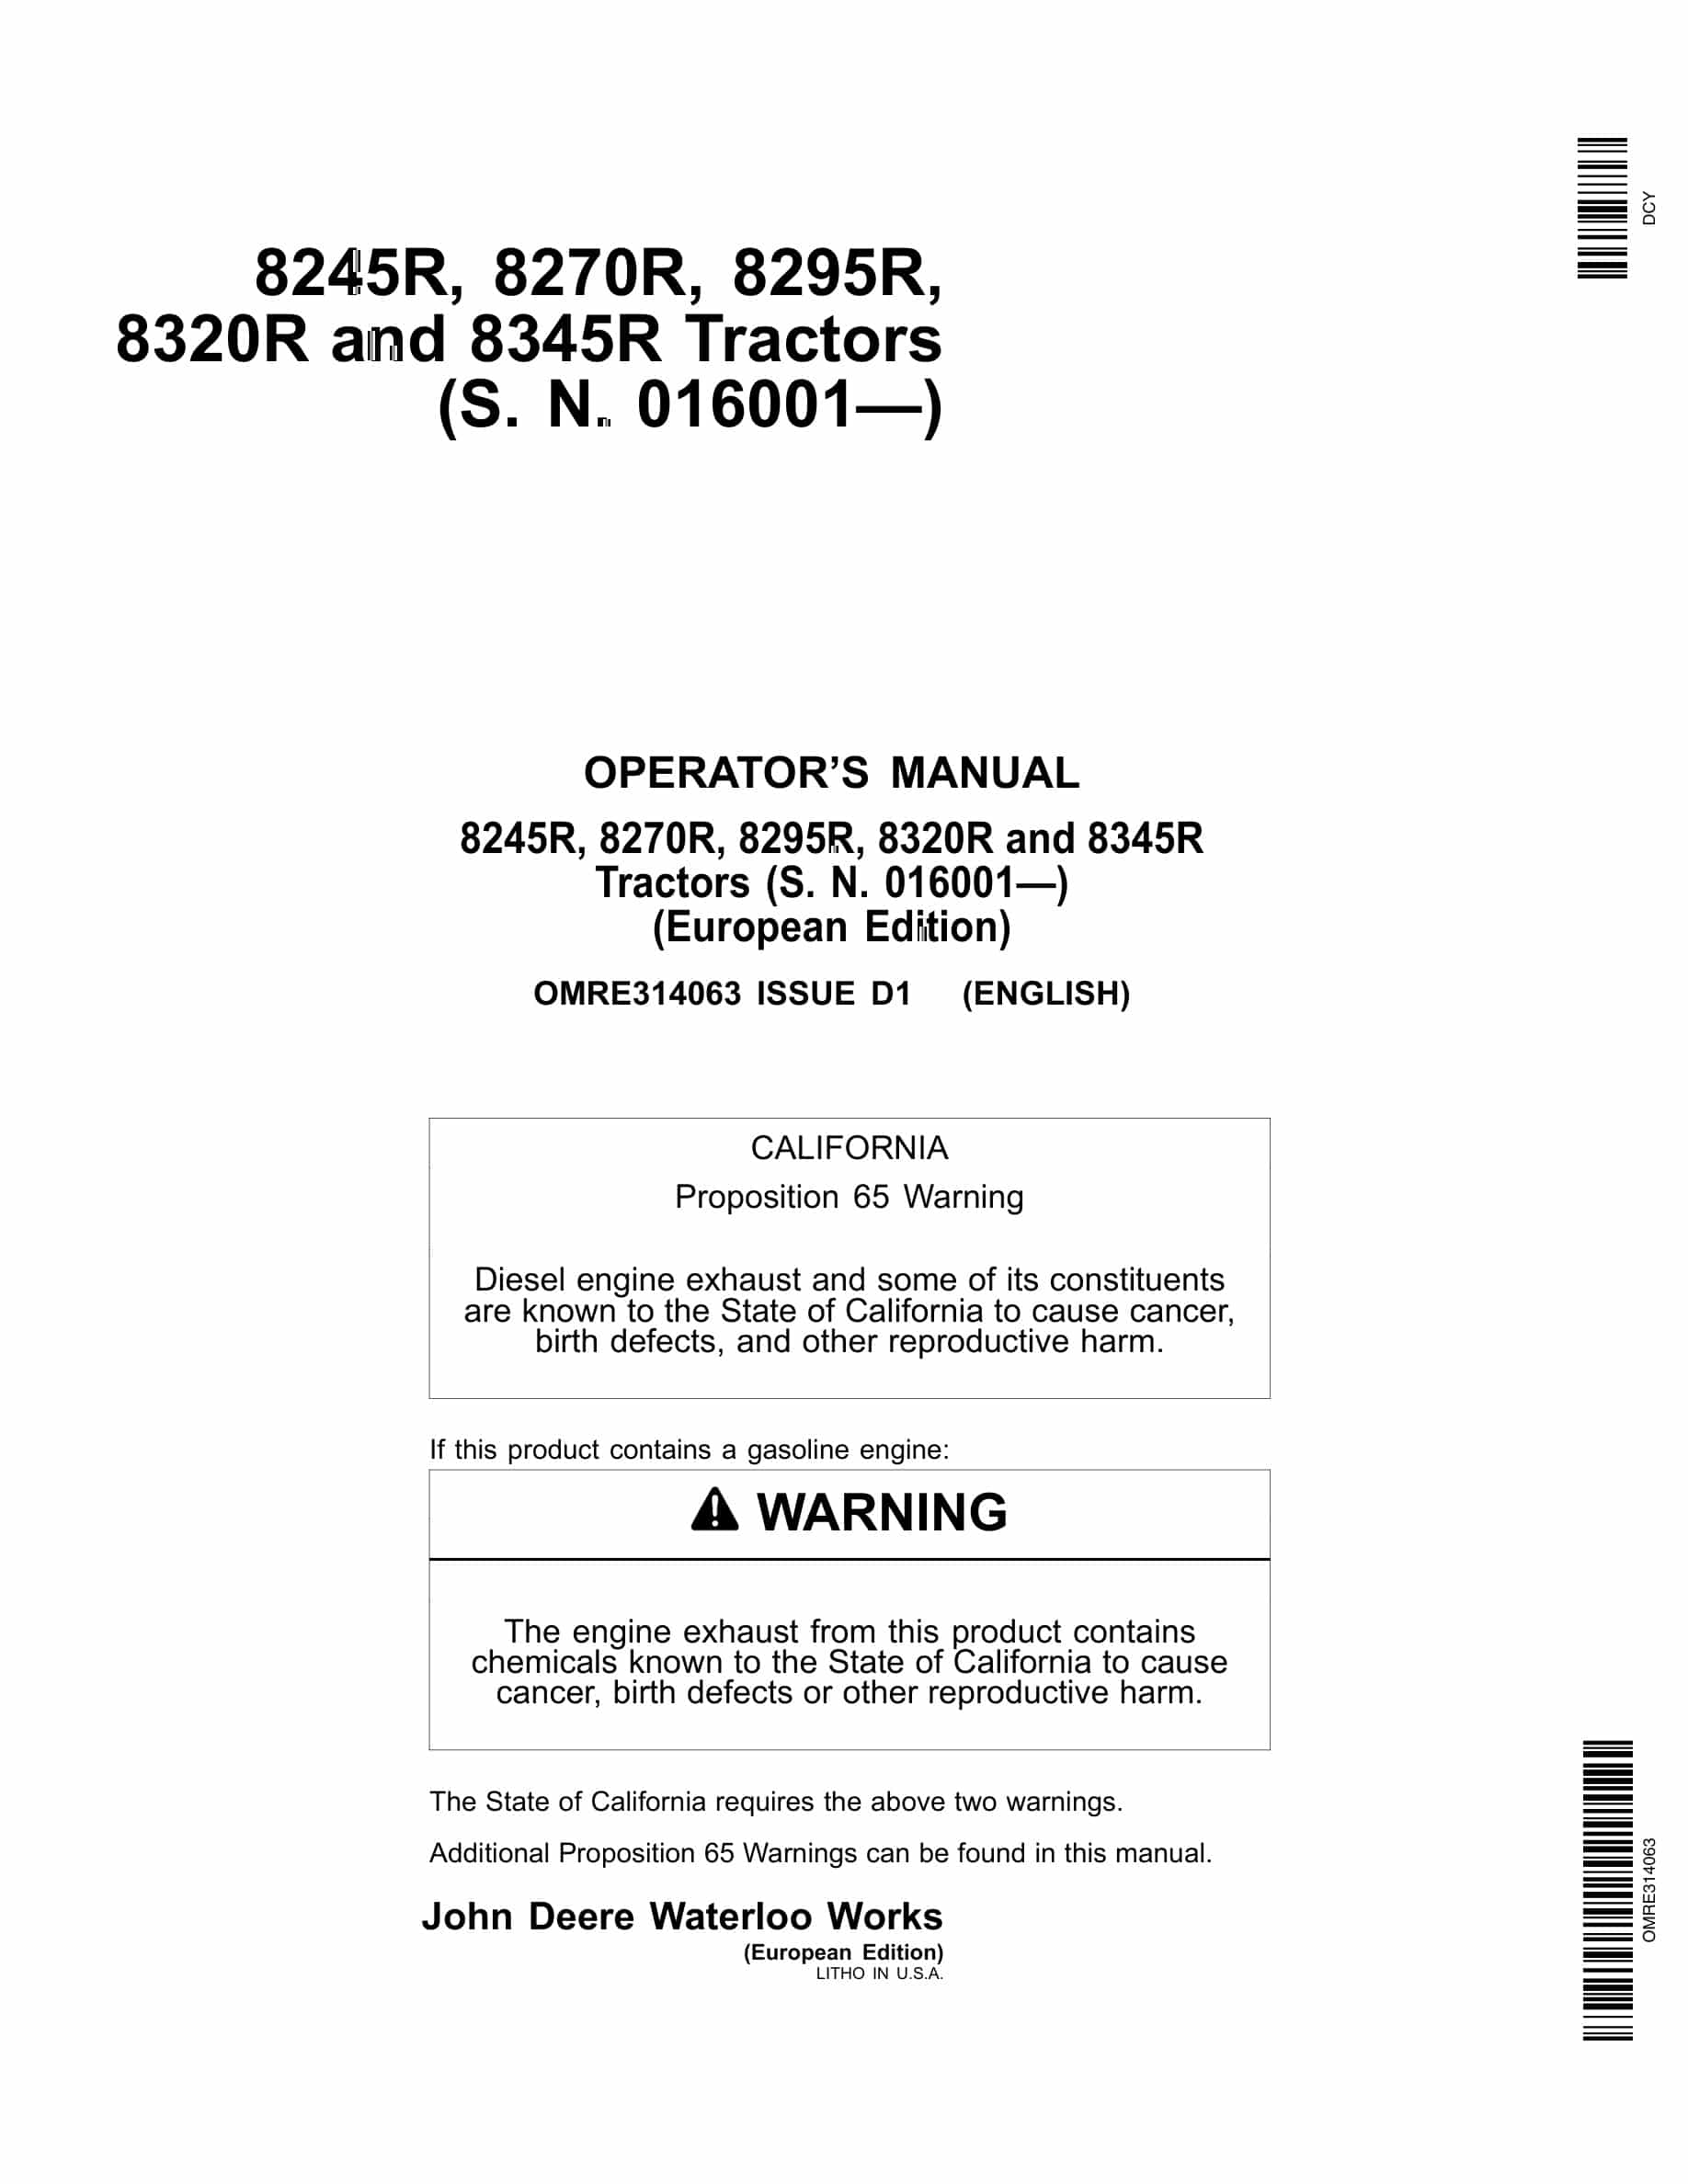 John Deere 8245r, 8270r, 8295r, 8320r And 8345r Tractors Operator Manuals OMRE314063-1